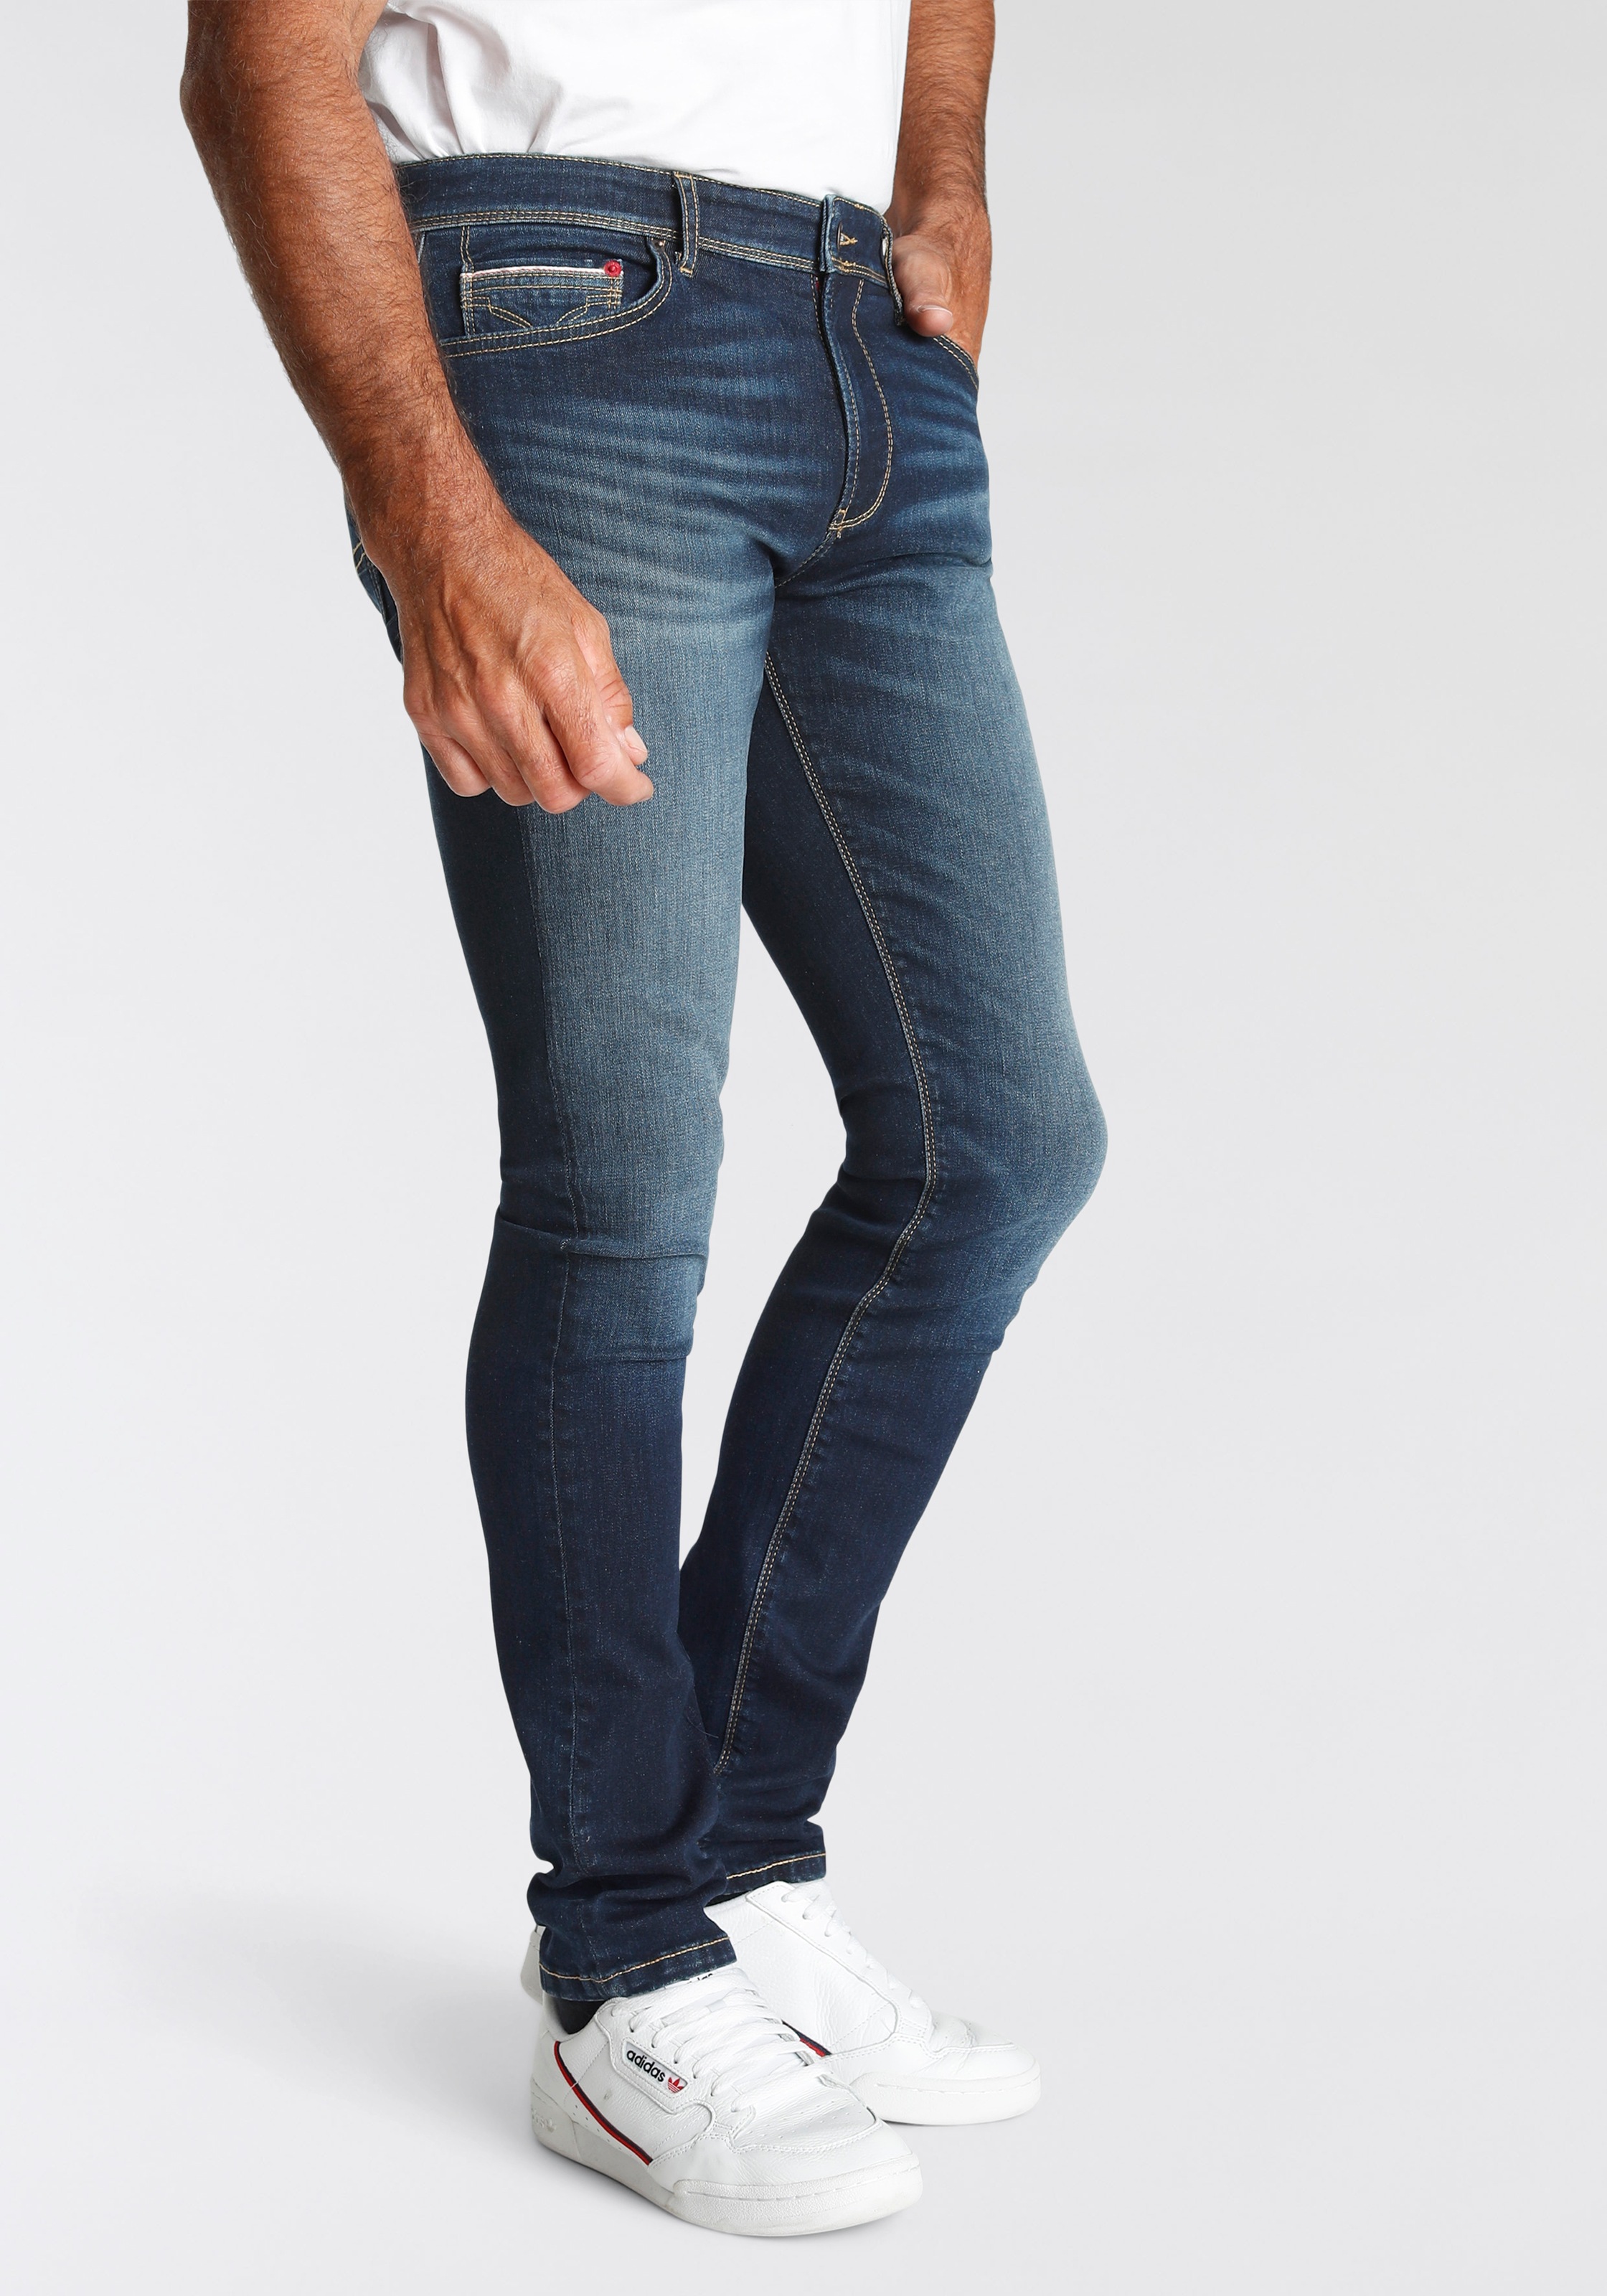 H.I.S Straight-Jeans »Boyd«, Ökologische, online kaufen Produktion wassersparende Ozon Wash durch